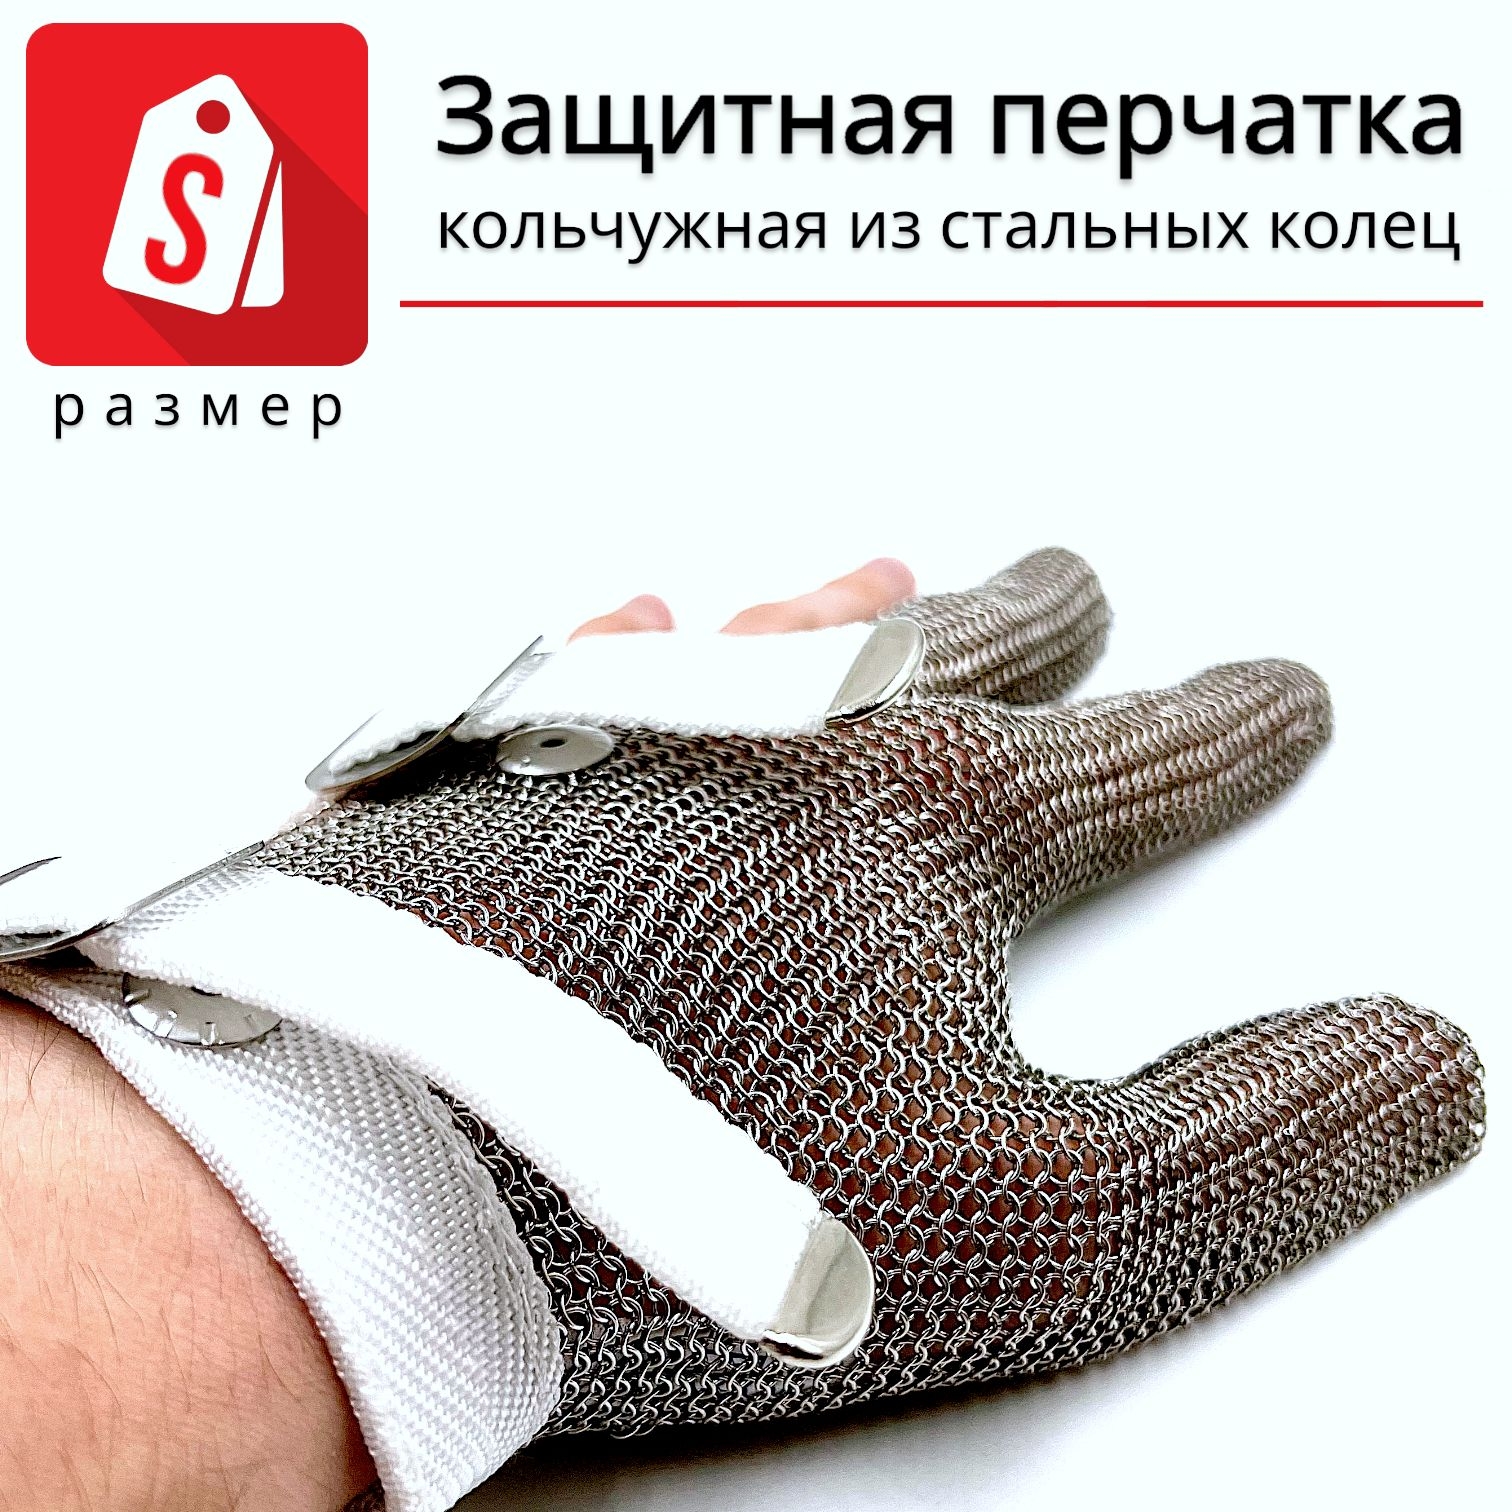 Трехпалая кольчужная перчатка (размер S) перчатка щетка для шерсти на левую руку из неопрена с удлиненными зубчиками фиолетовая